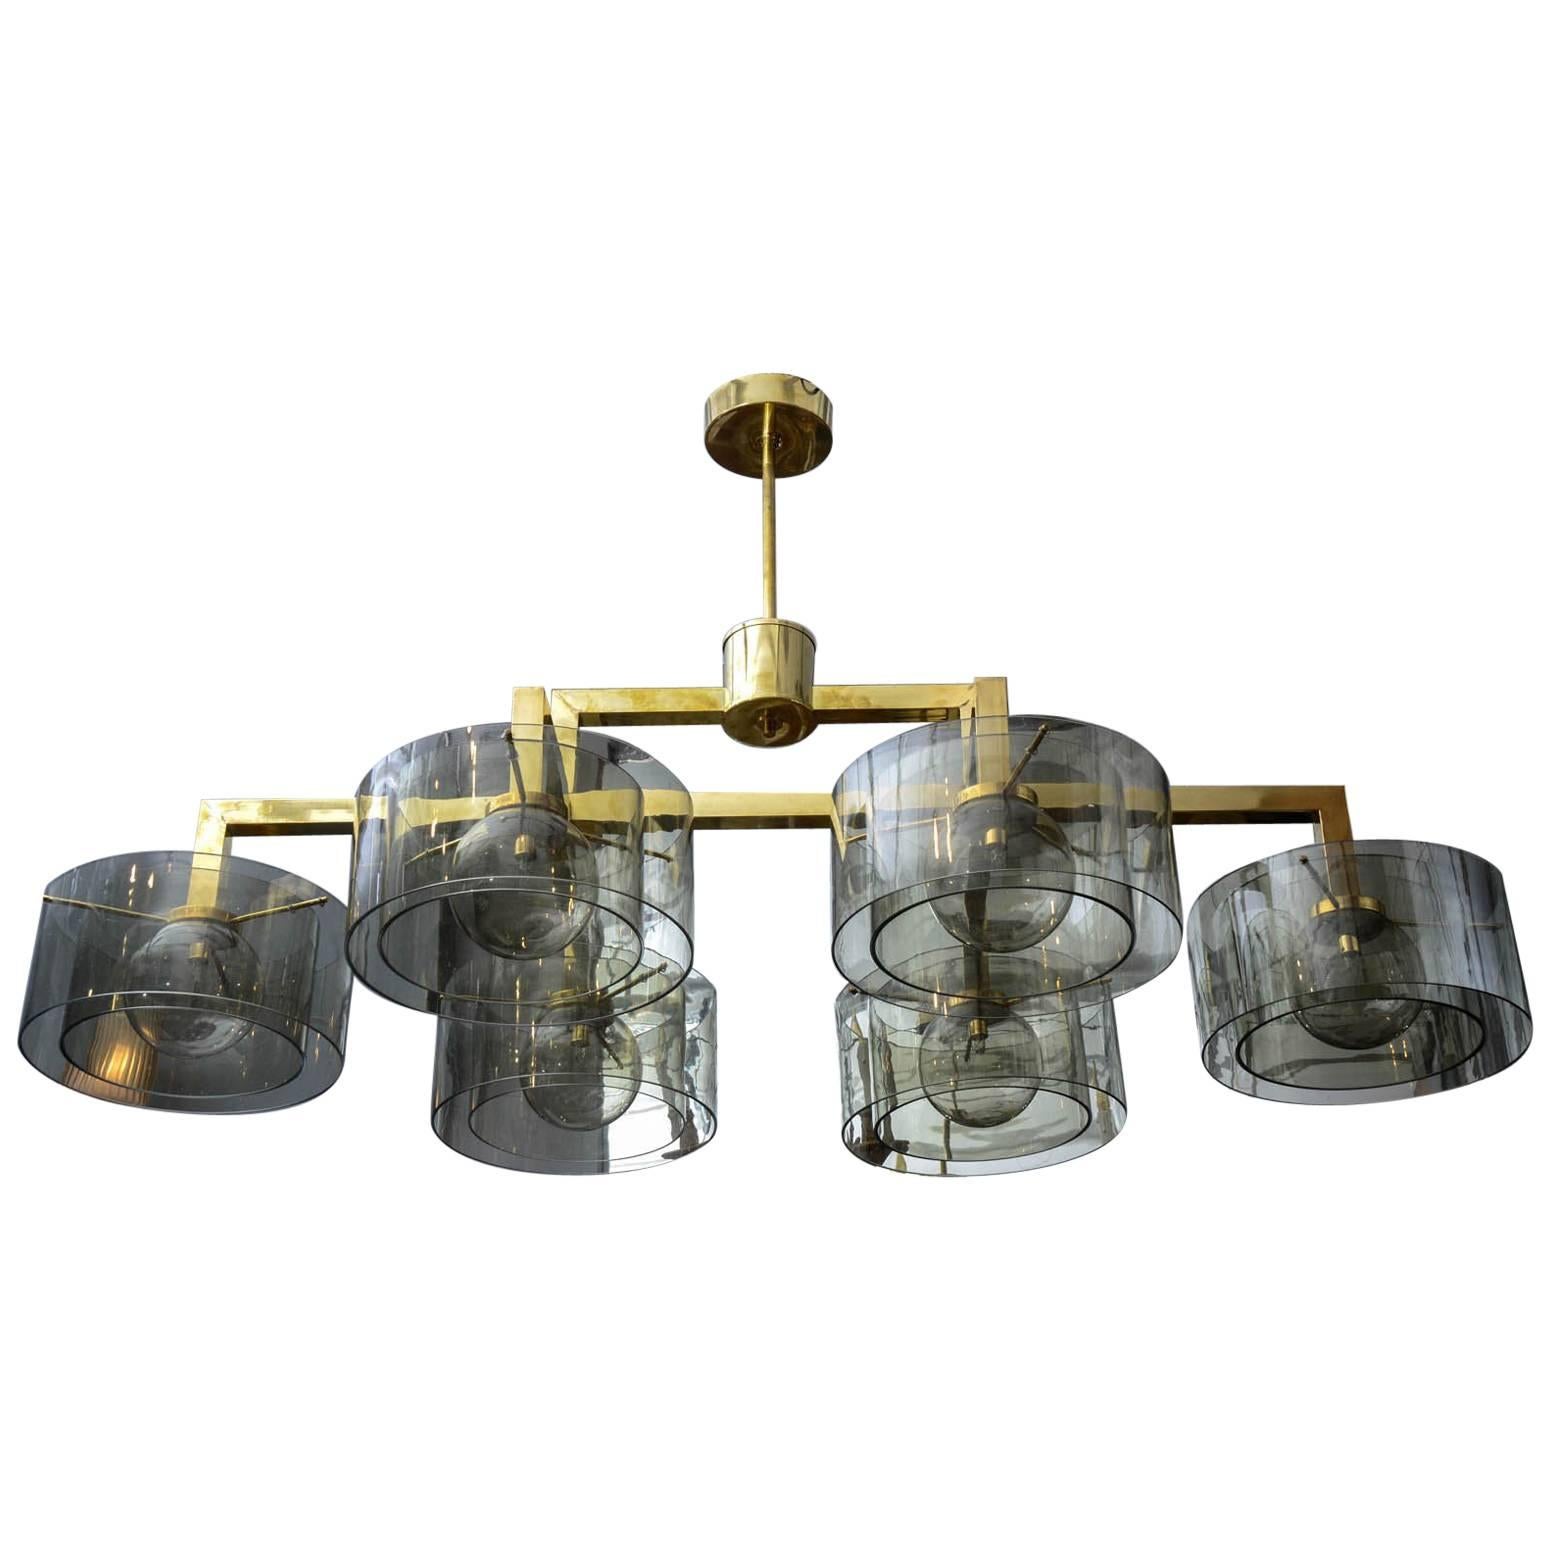 Glustin Luminaires Creation Brass Chandelier with Grey Glass Cylinder